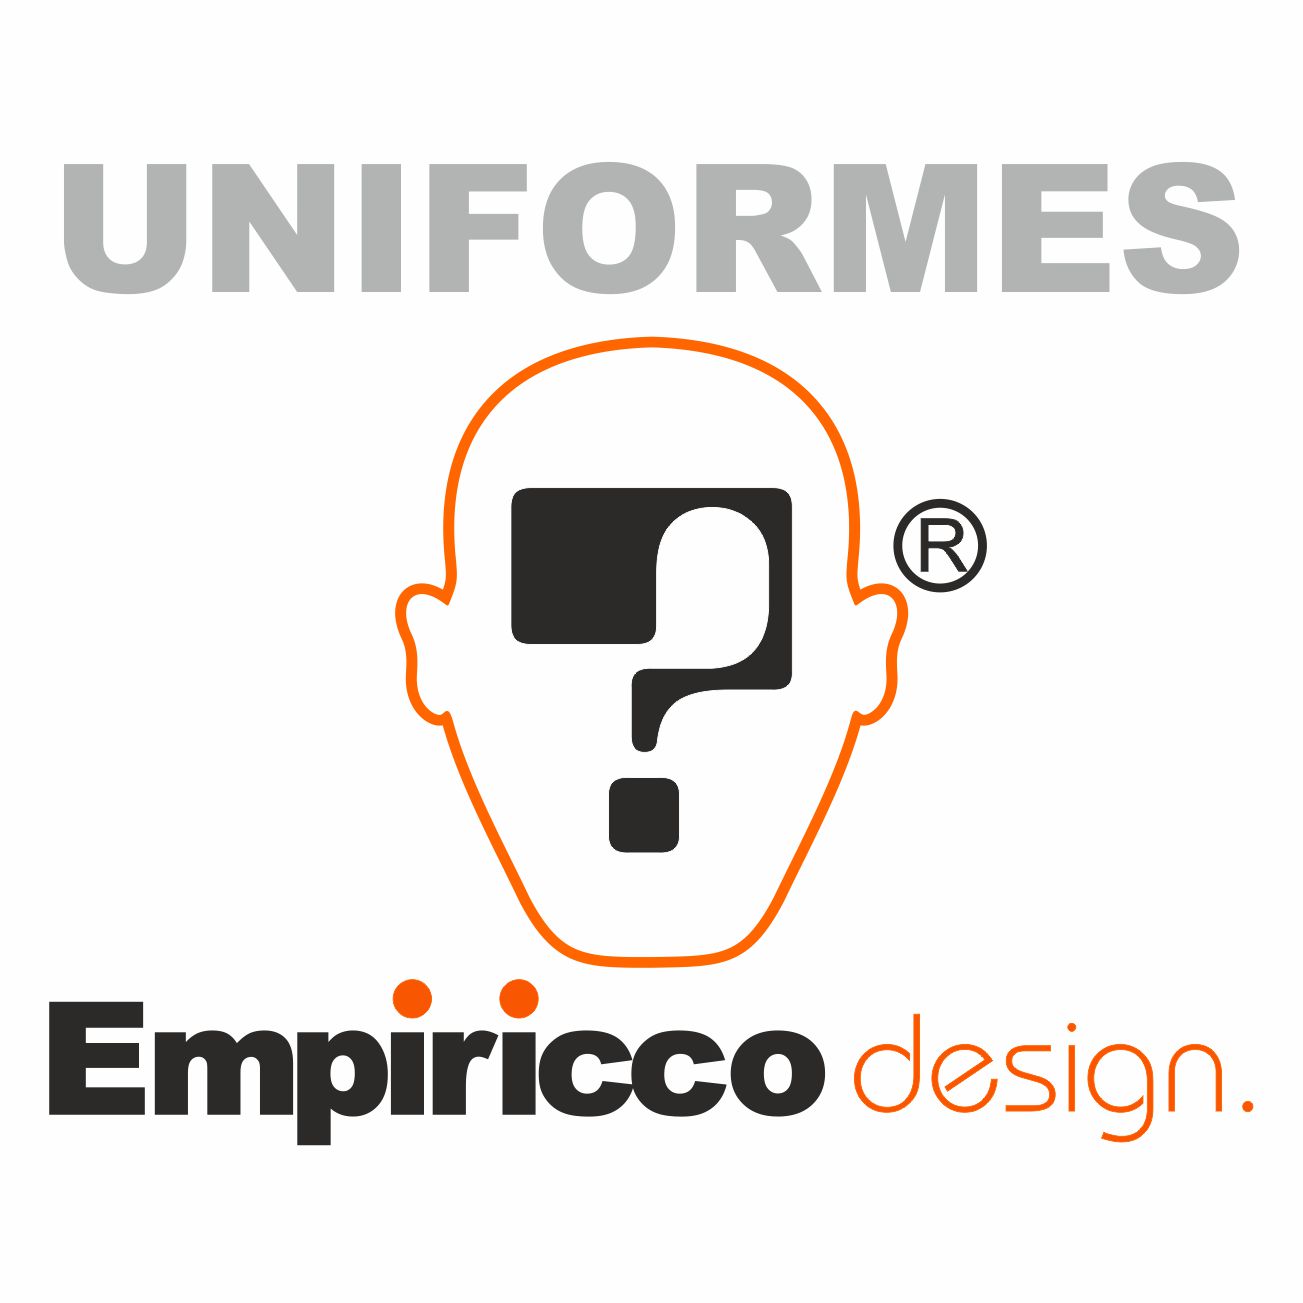 UNIFORMES EMPIRICCO DESIGN